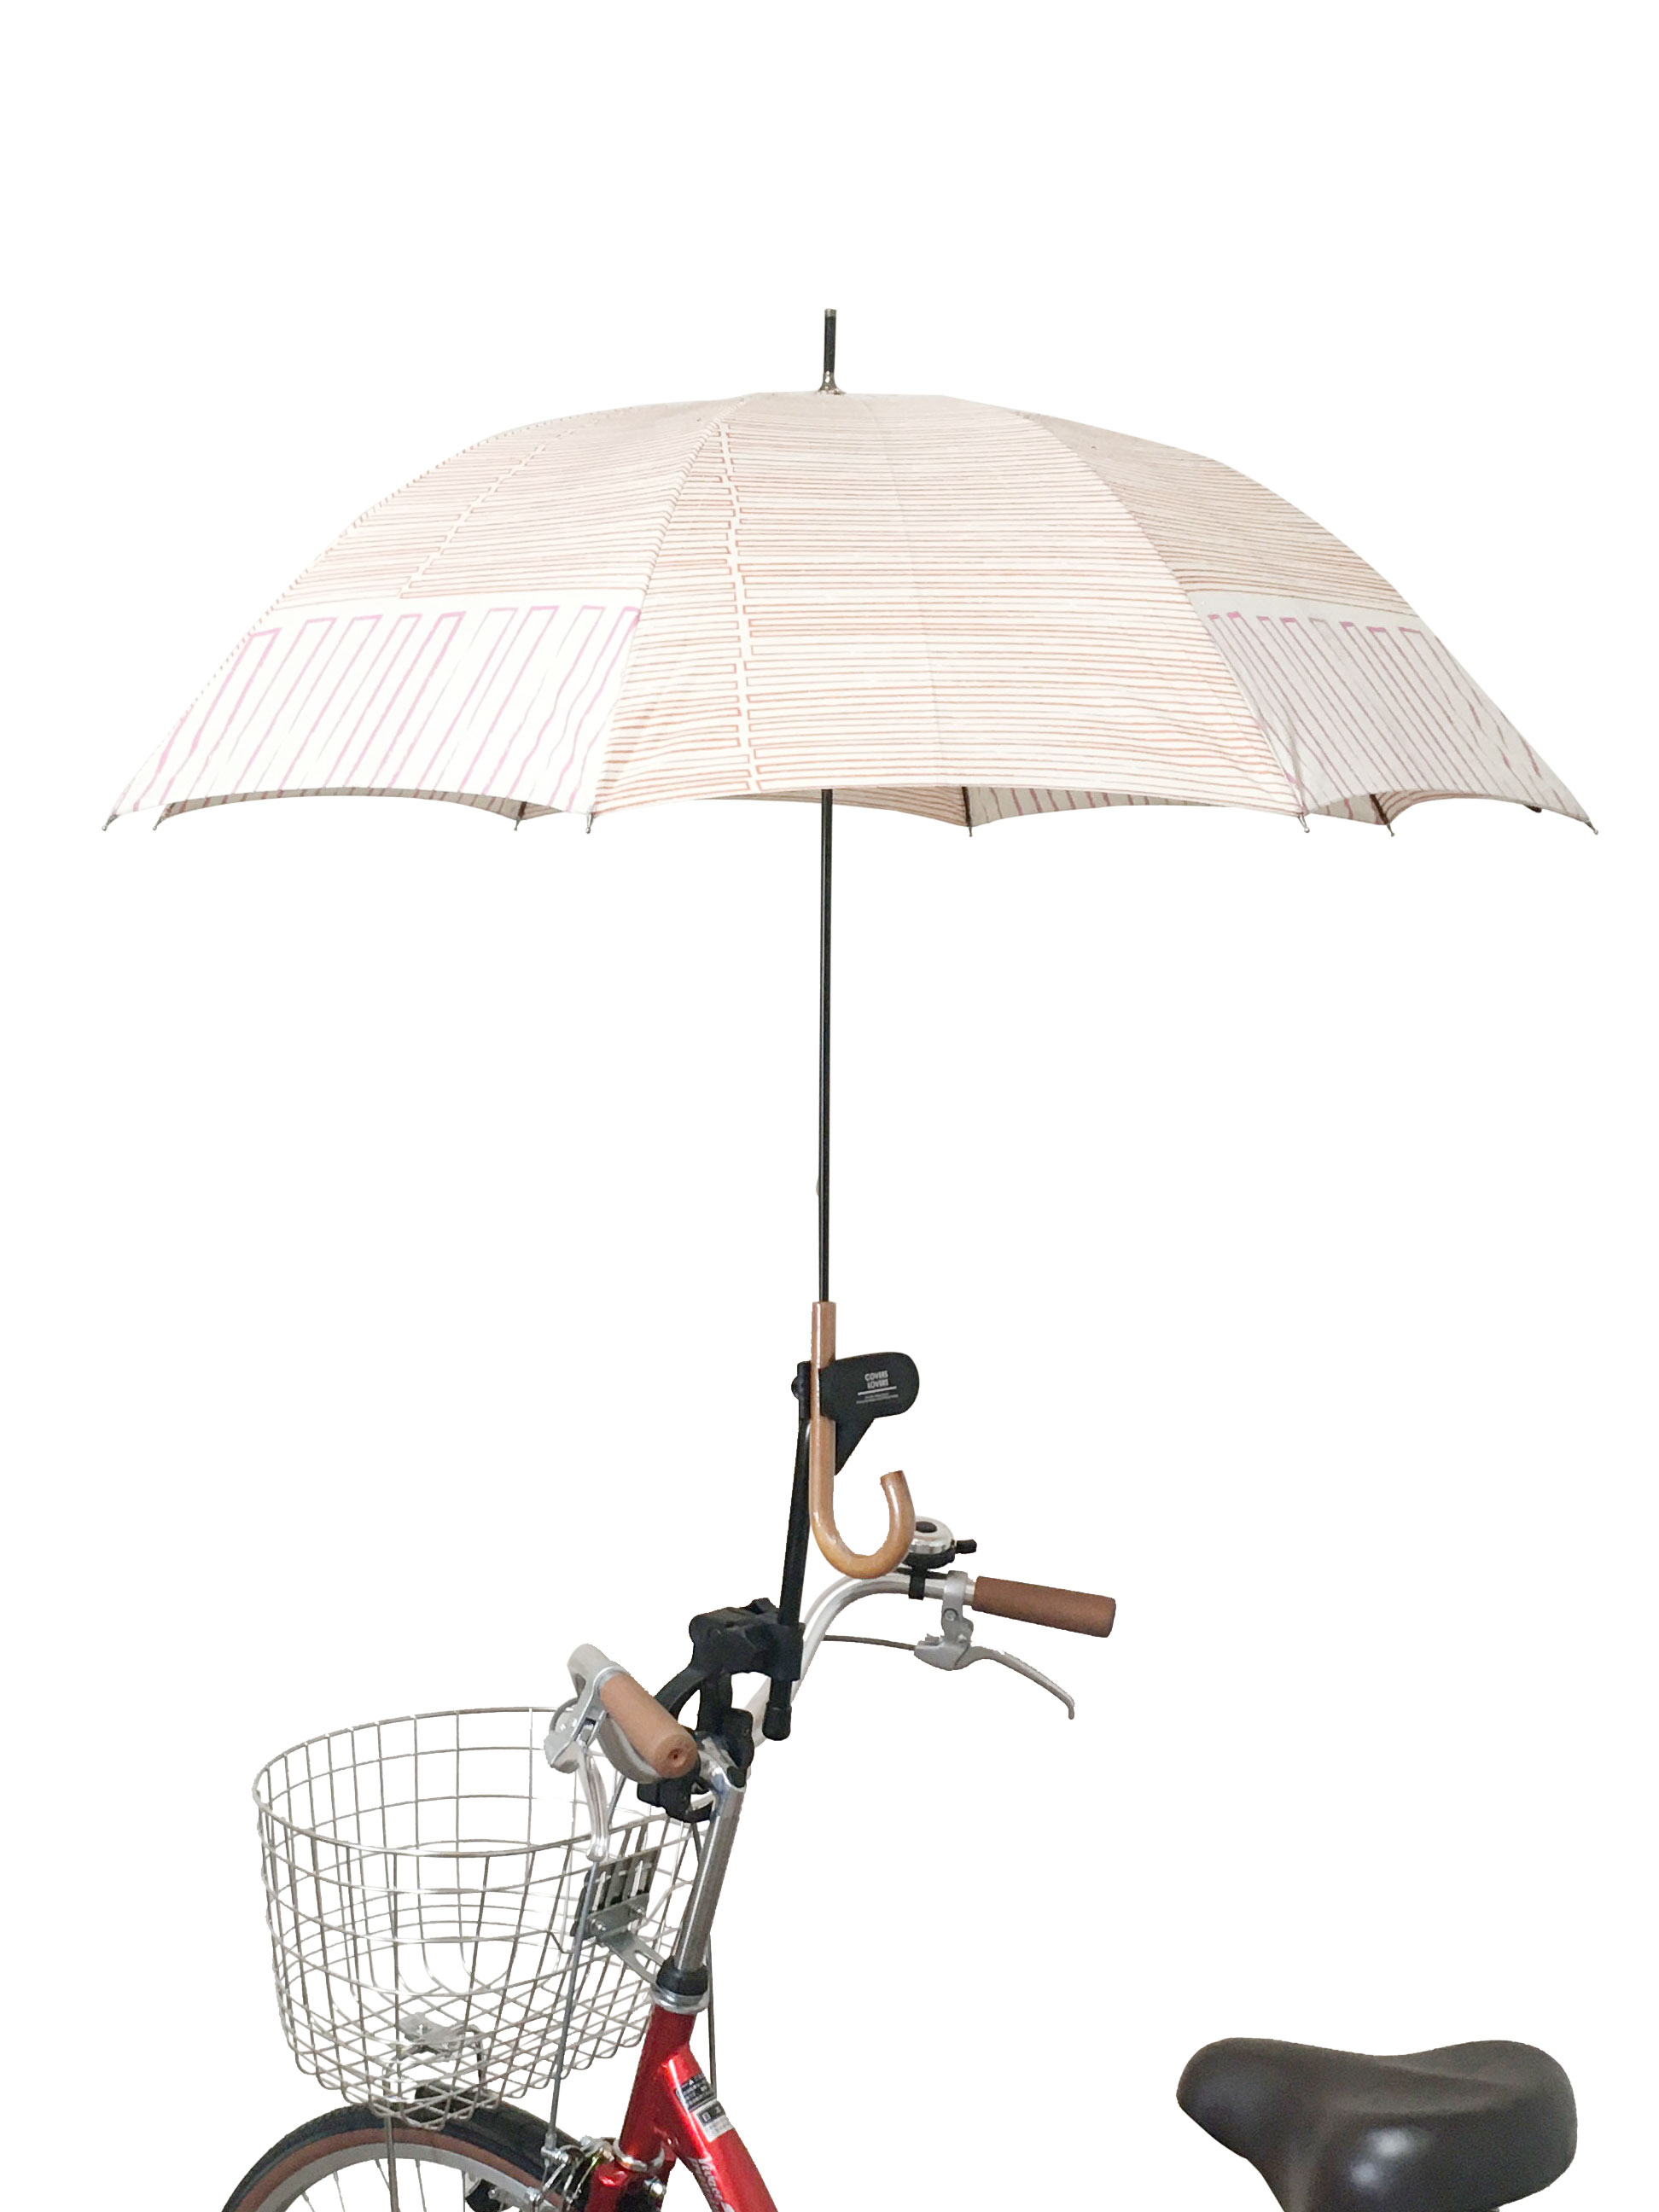 自転車用品 折りたためる 自転車用 傘スタンド 雨降り 傘 スタンド ホルダー 固定 自転車 雨の日 便利 通勤 通学 傘ホルダー 紫外線対策 おしゃれ かわいい 梅雨 自転車傘立て